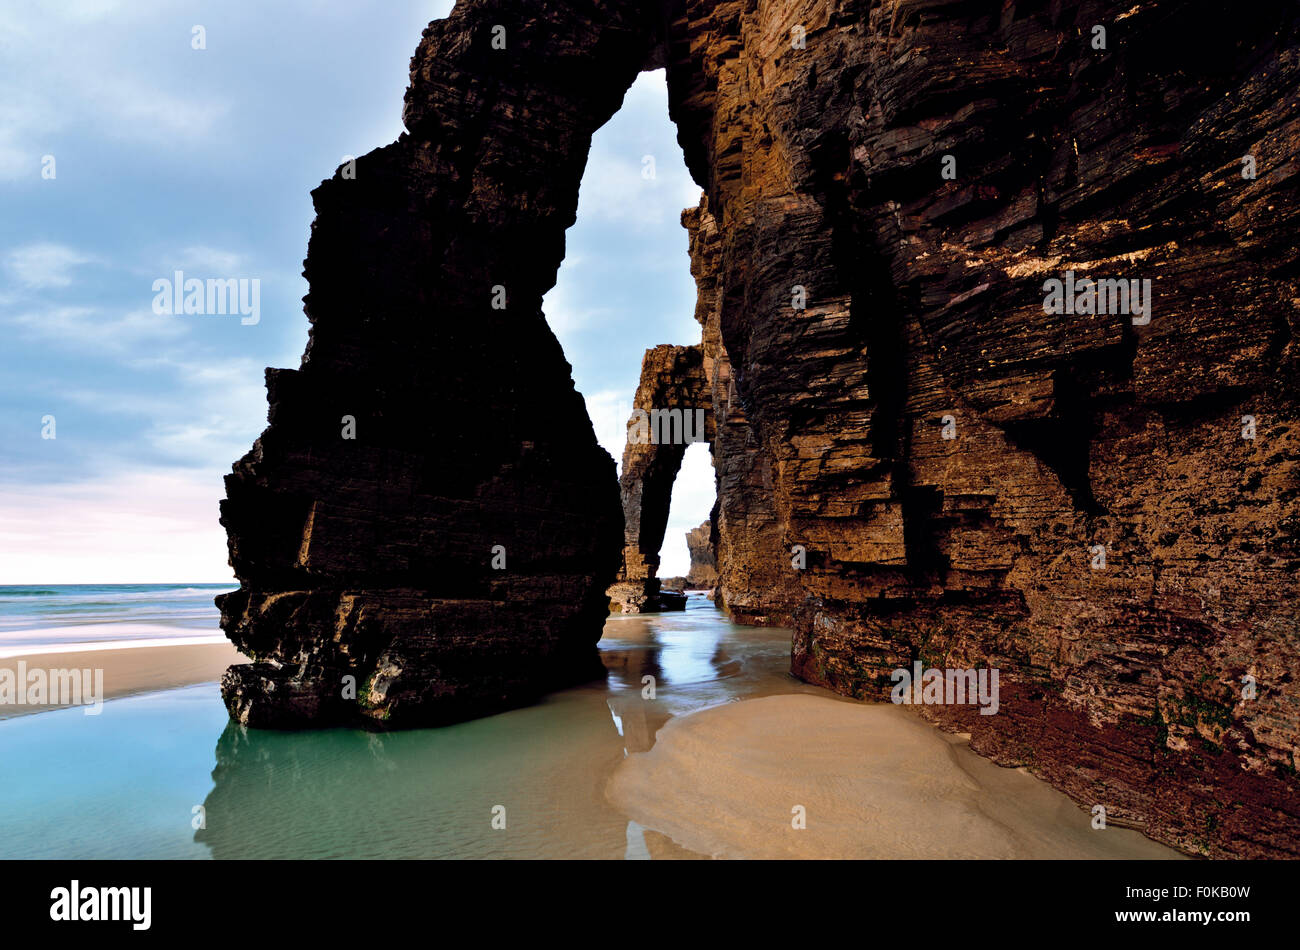 España, Galicia: Rock arcadas en la Catedral de playa Foto de stock